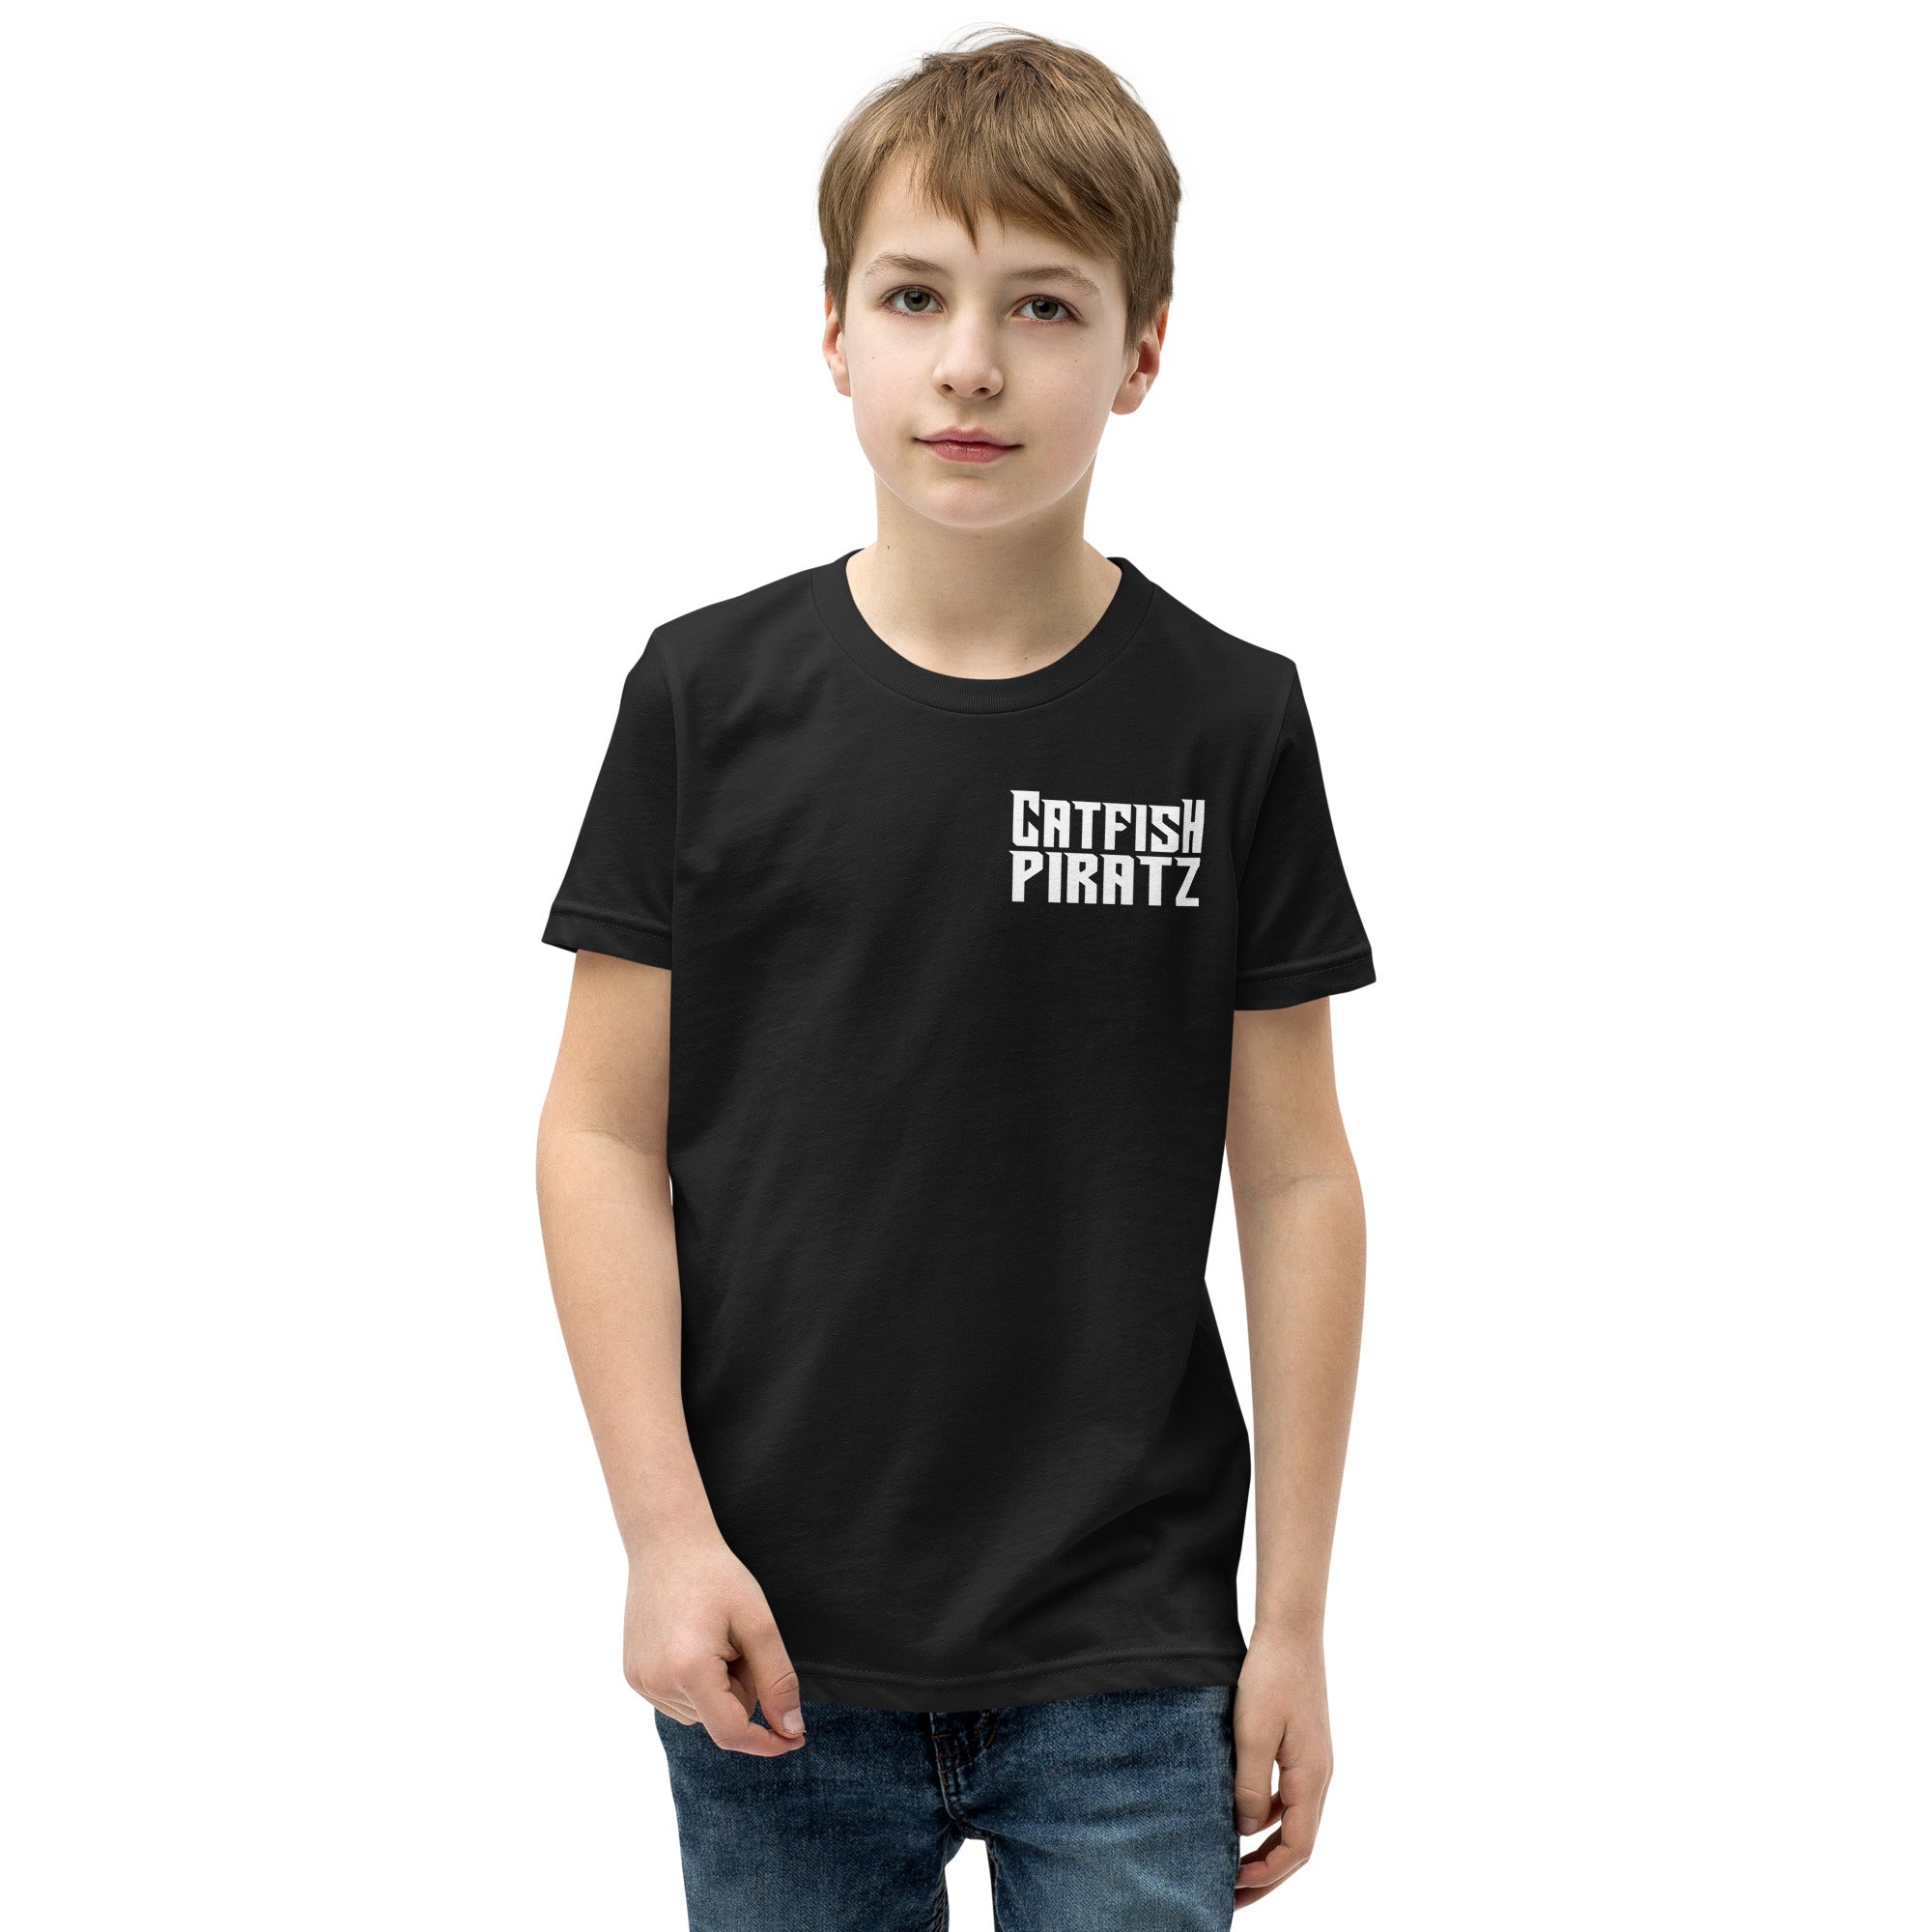 Catfish Pirates Youth Short Sleeve T-Shirt